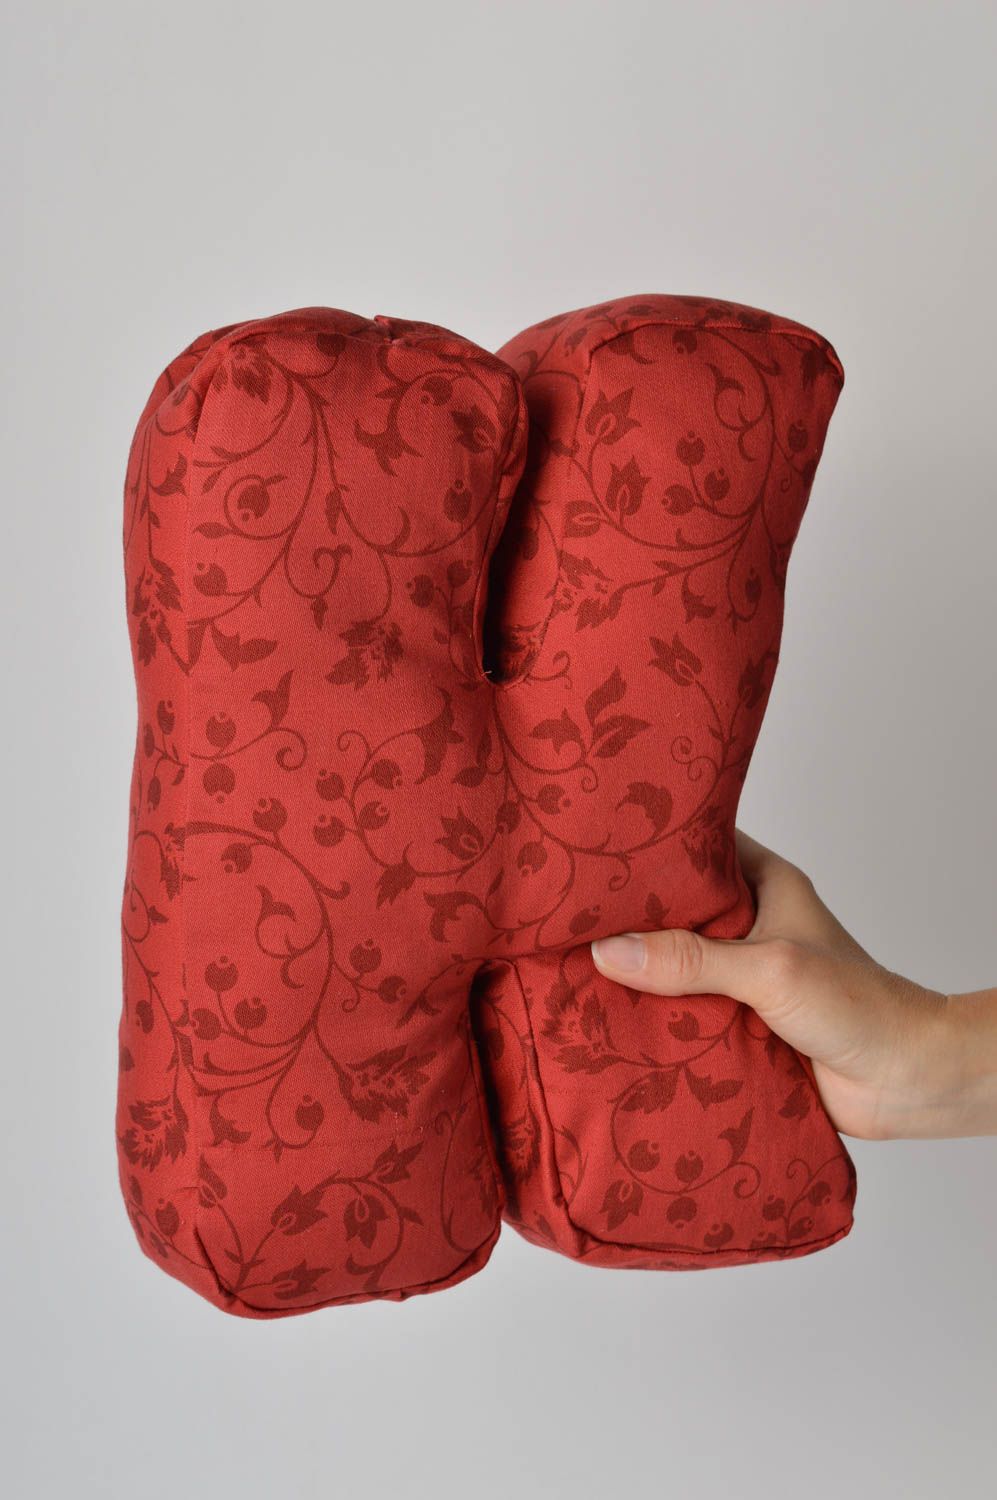 Декоративная подушка ручной работы подушка-буква из жаккарда мягкая буква К фото 1